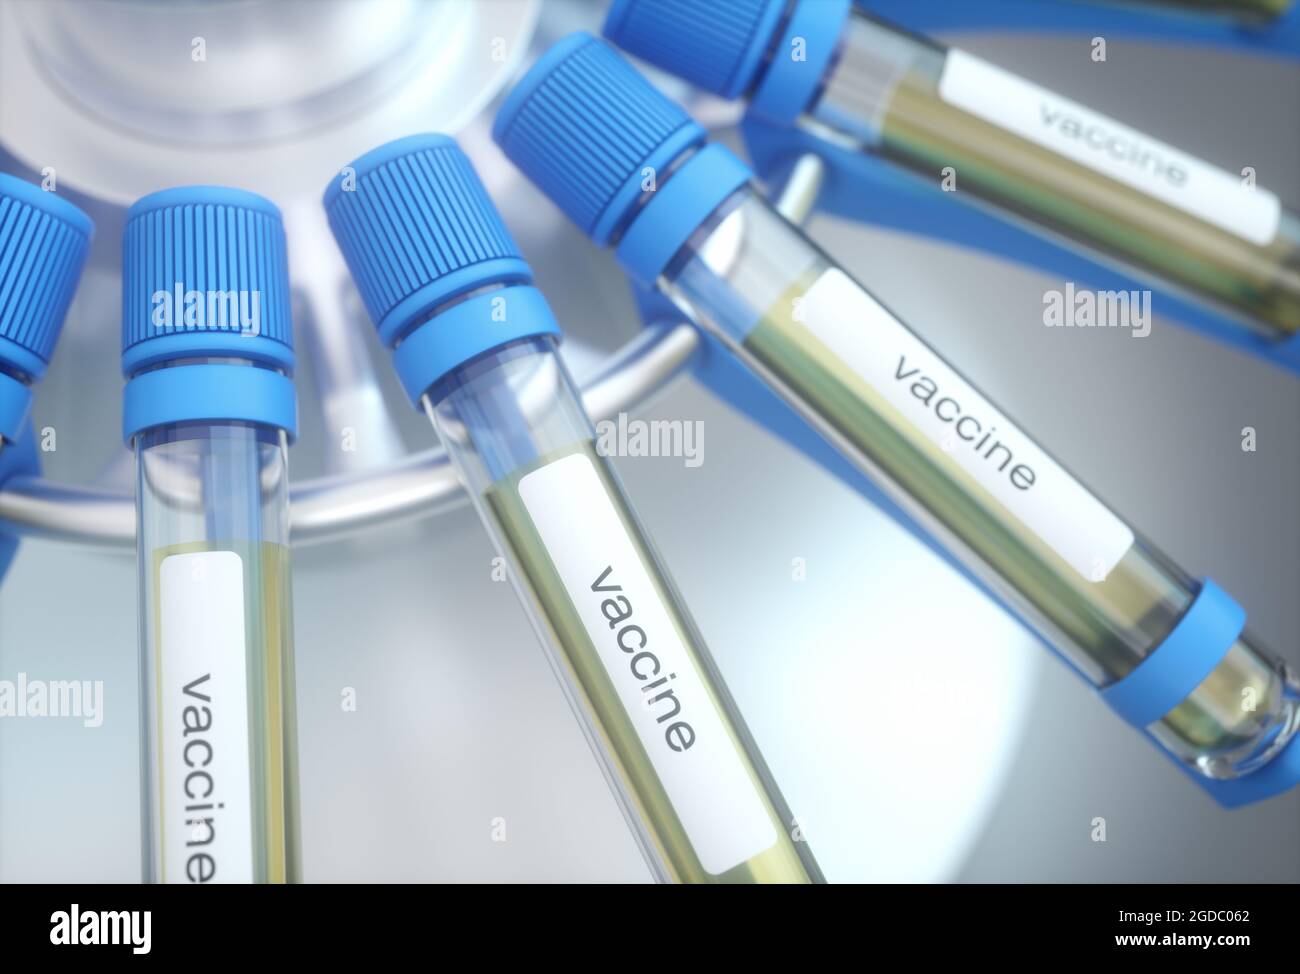 Tube à essai avec étiquette de vaccin. Image de concept illustration 3d. Banque D'Images